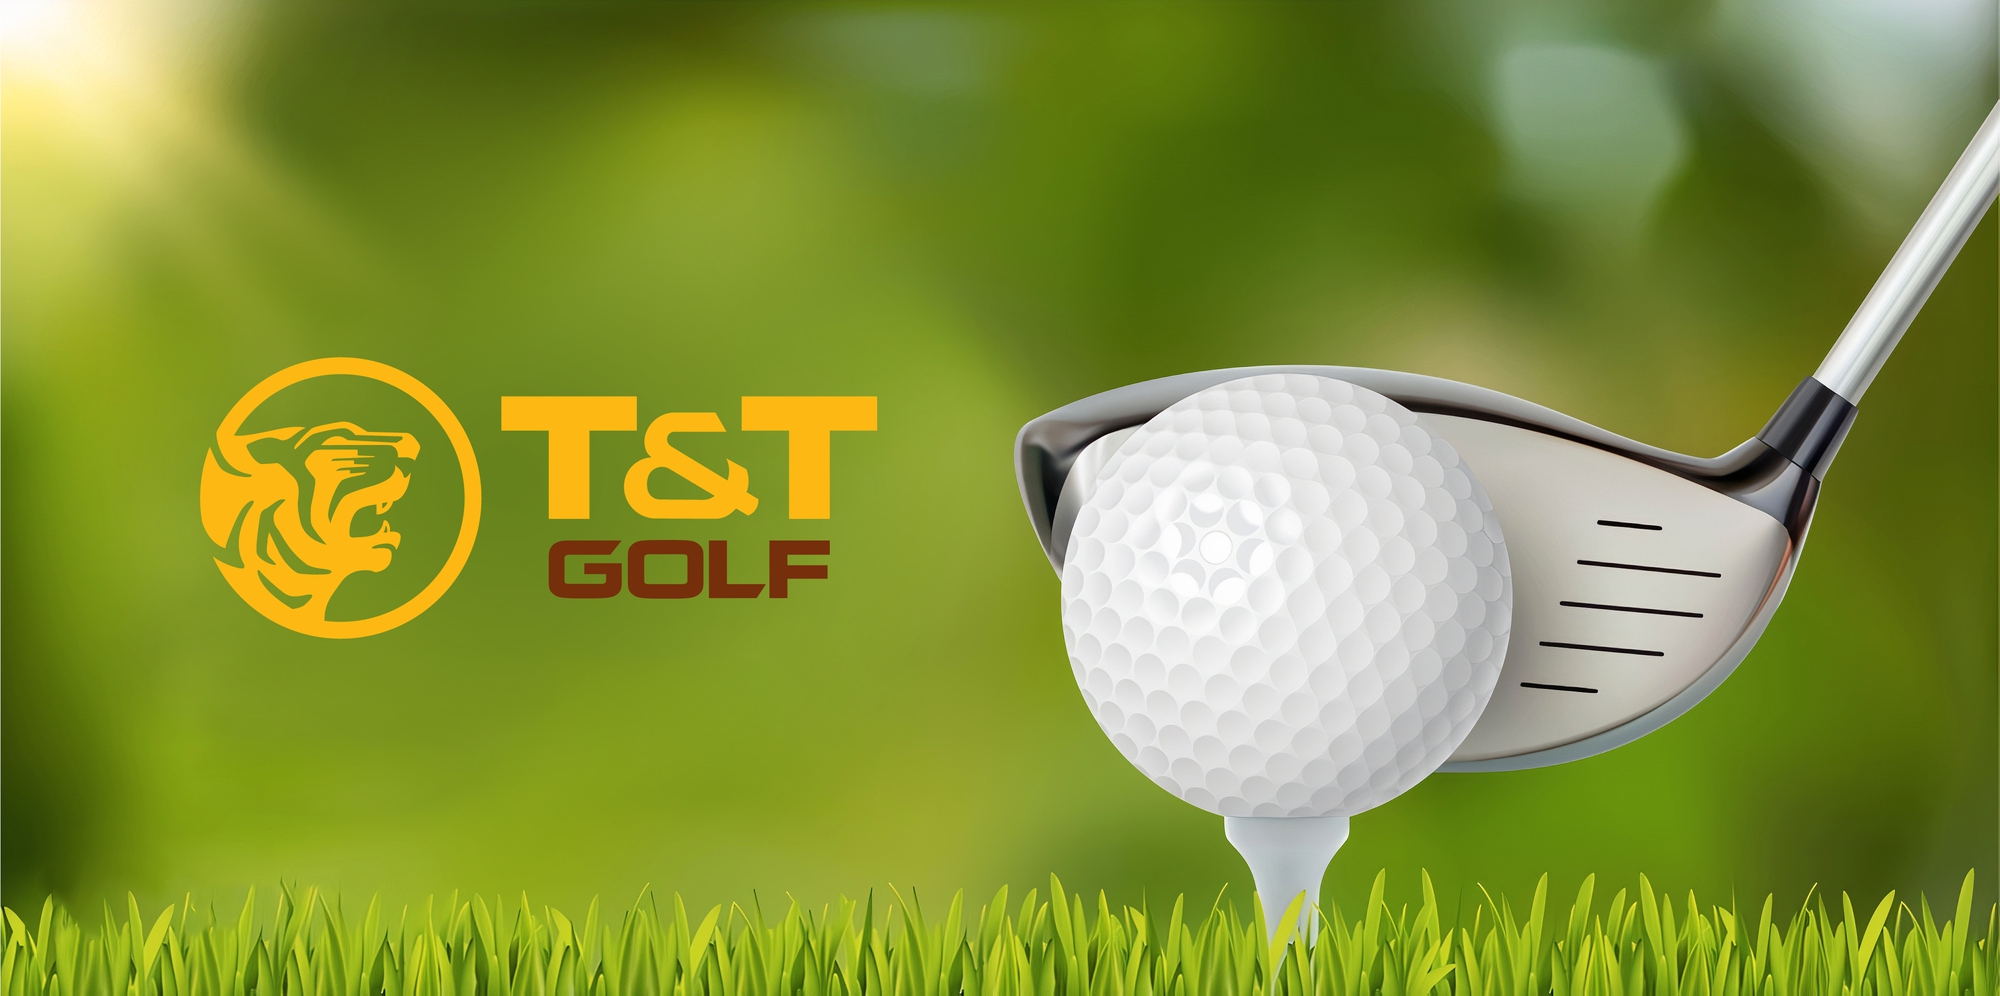  T&T Group ra mắt thương hiệu T&T Golf với dự án đầu tiên tại Phú Thọ - Ảnh 2.